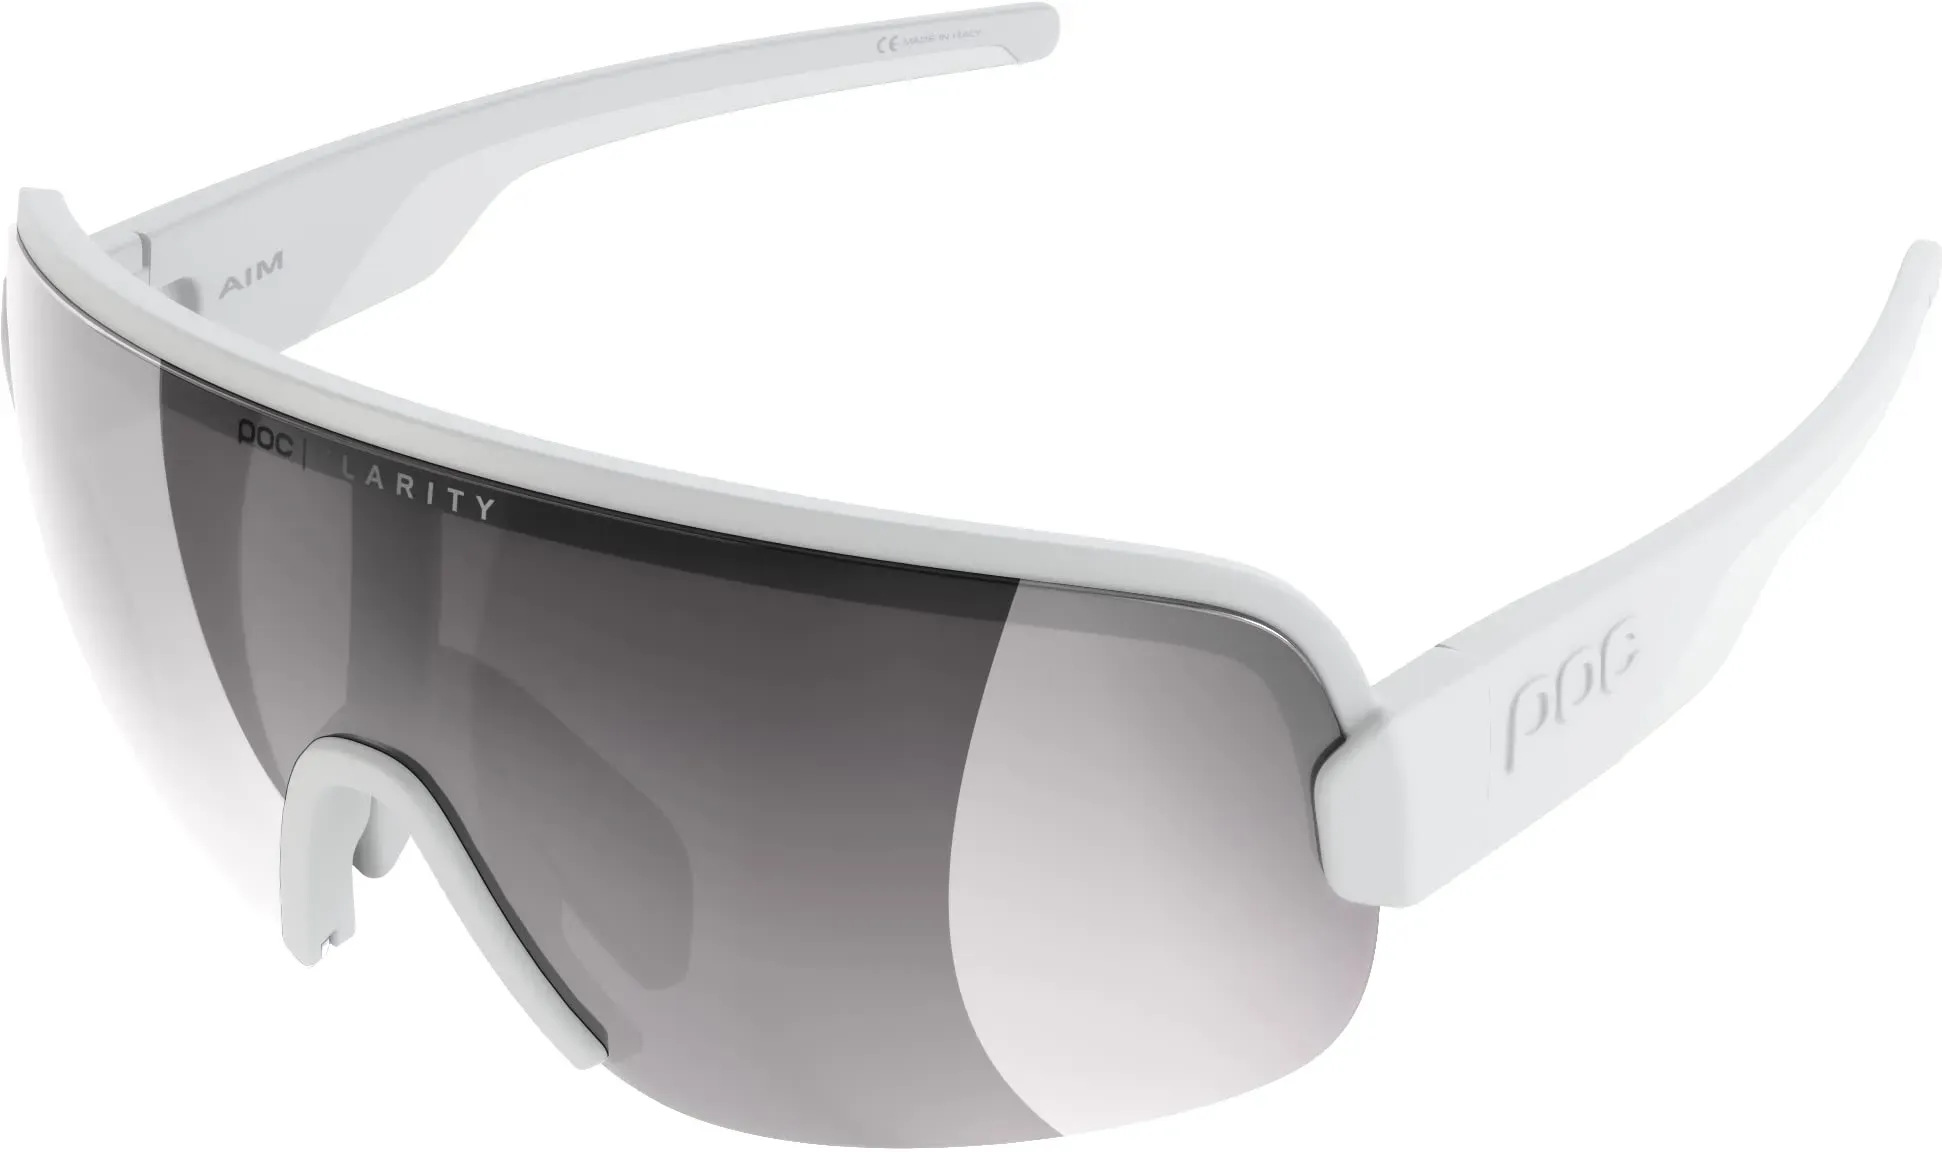 POC AIM Sonnenbrille - Sportbrille mit extra großen Brillenglas für maximales Sichtfeld für Straßen und Off-Road-Touren, Hydrogen White